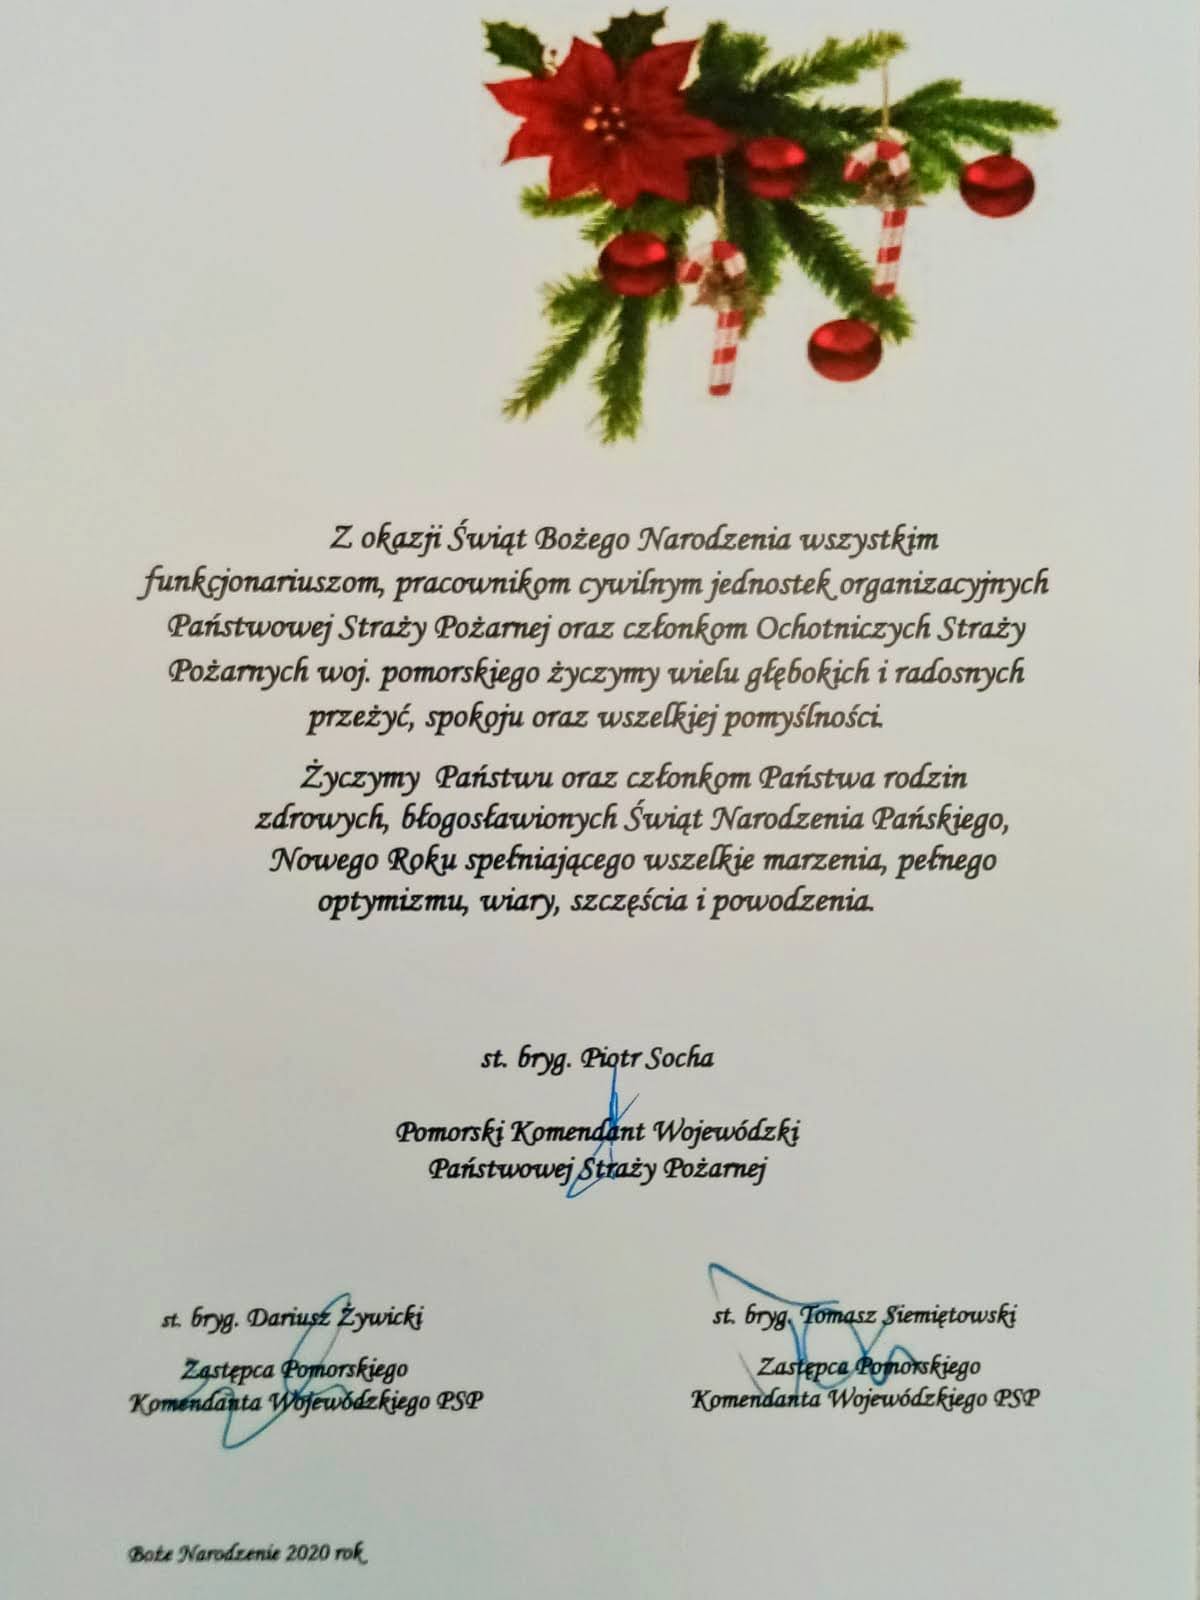 Życzenia kierownictwa KW PSP z okazji Świąt Bożego Narodzenia oraz Nowego Roku 2021.